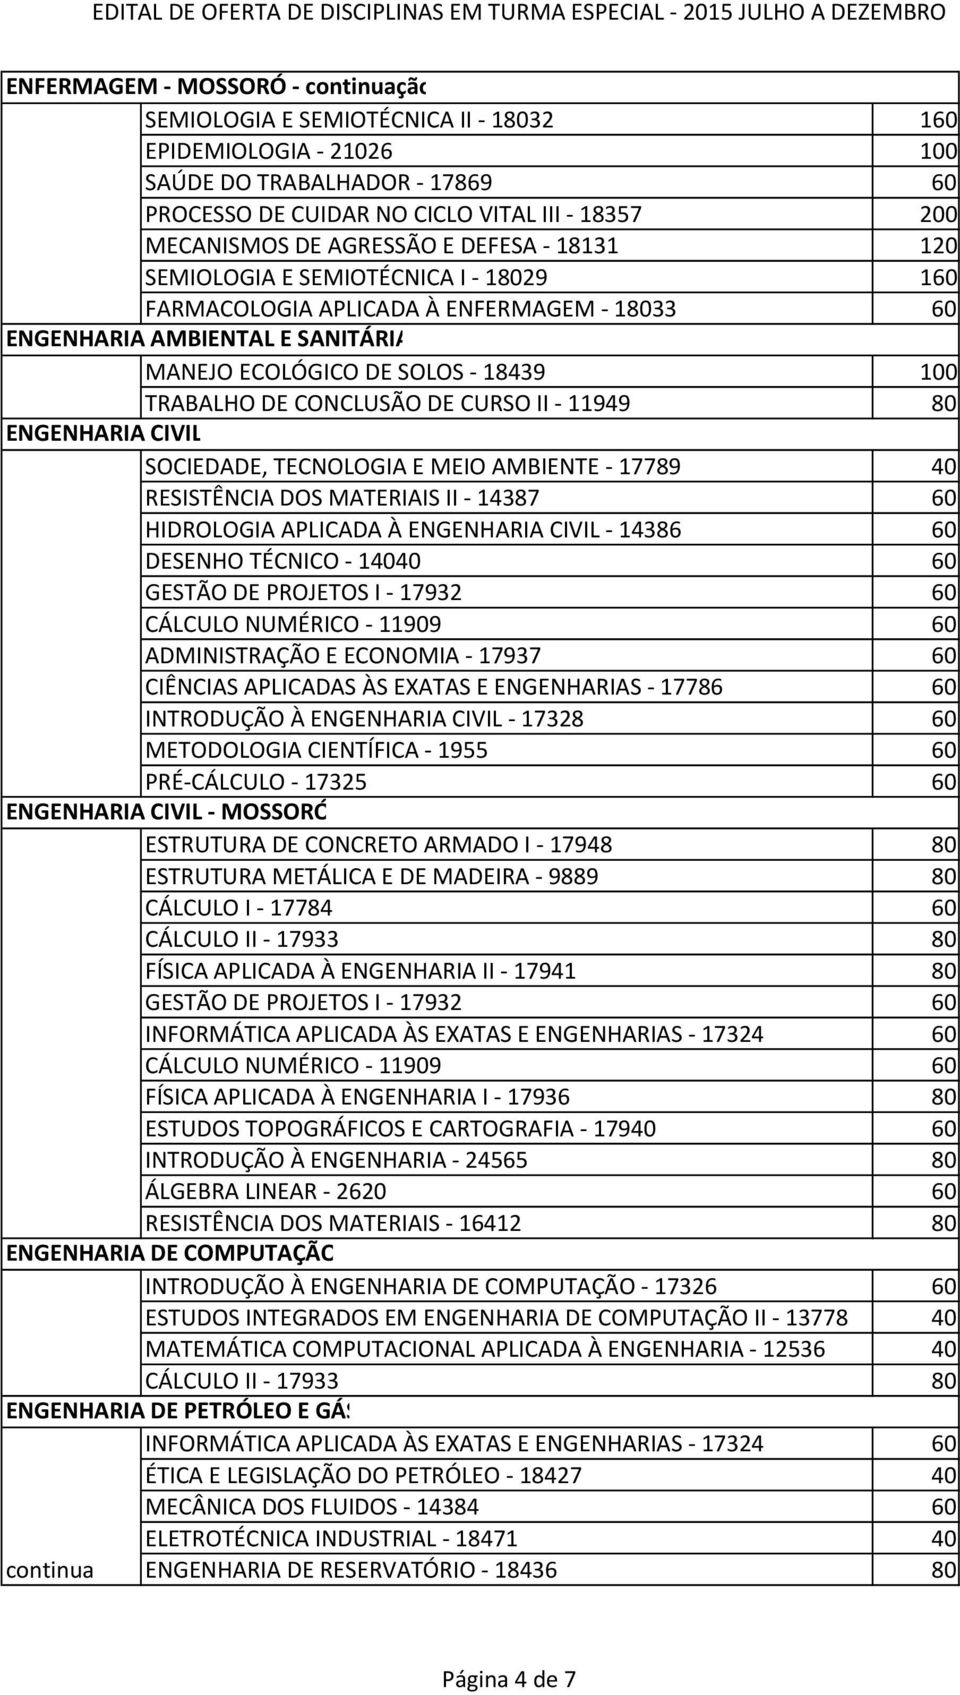 CONCLUSÃO DE CURSO II - 11949 80 ENGENHARIA CIVIL SOCIEDADE, TECNOLOGIA E MEIO AMBIENTE - 17789 40 RESISTÊNCIA DOS MATERIAIS II - 14387 60 HIDROLOGIA APLICADA À ENGENHARIA CIVIL - 14386 60 DESENHO